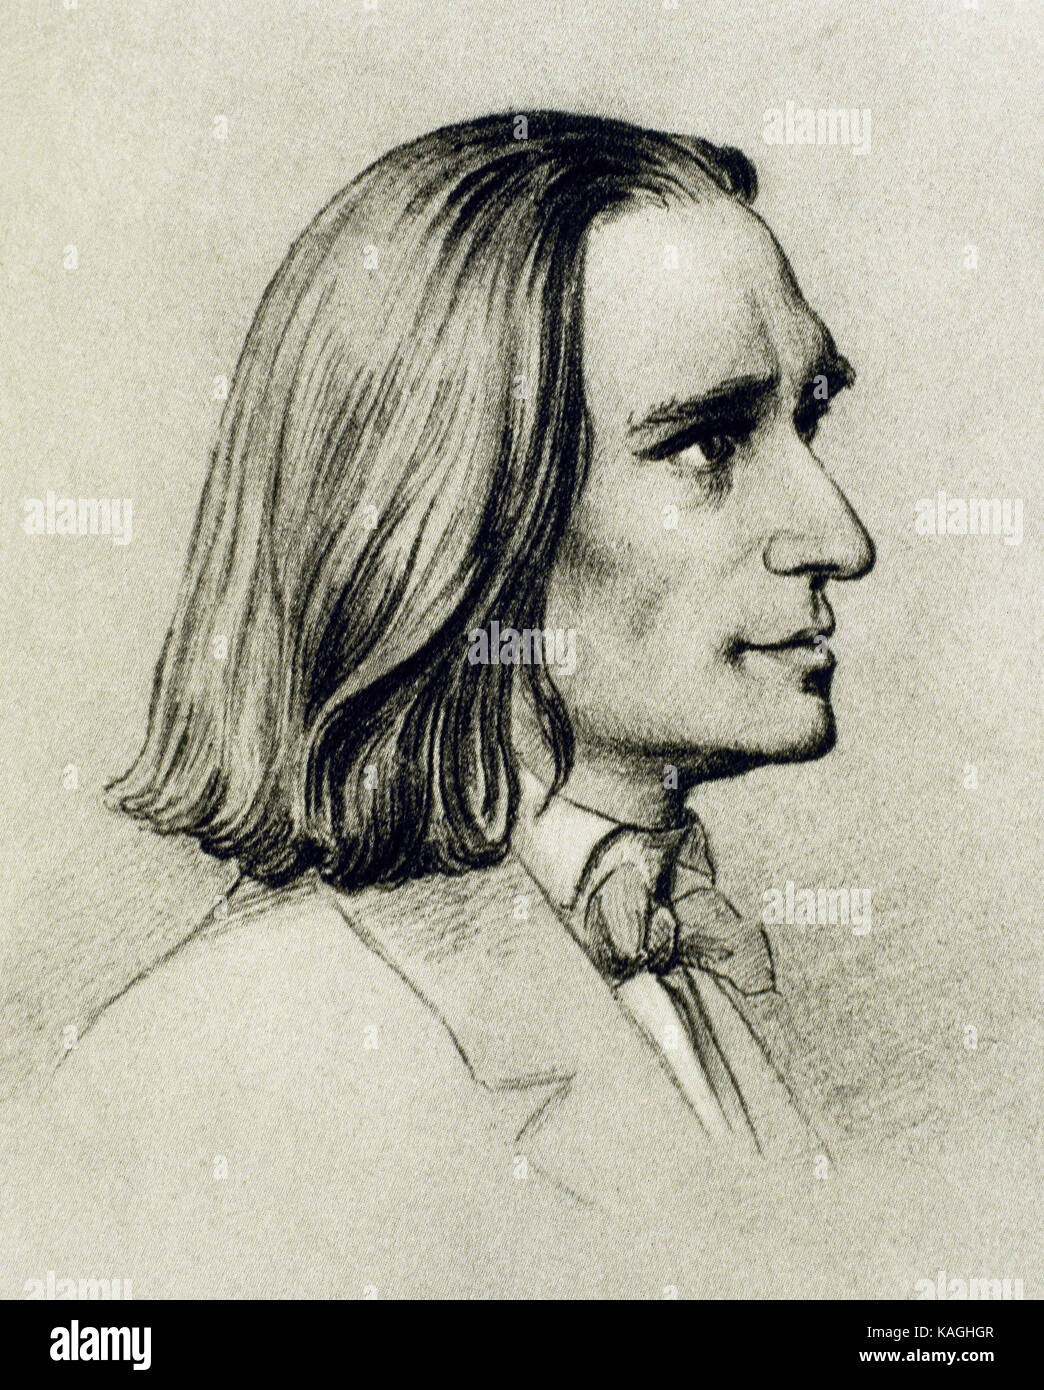 Franz Liszt (1811-1886). Ungarische Pianist und Komponist. Porträt. Zeichnung von Friedrich Preller dem Älteren (1804-1878). Liszt Museum. Weimar. Deutschland. Stockfoto